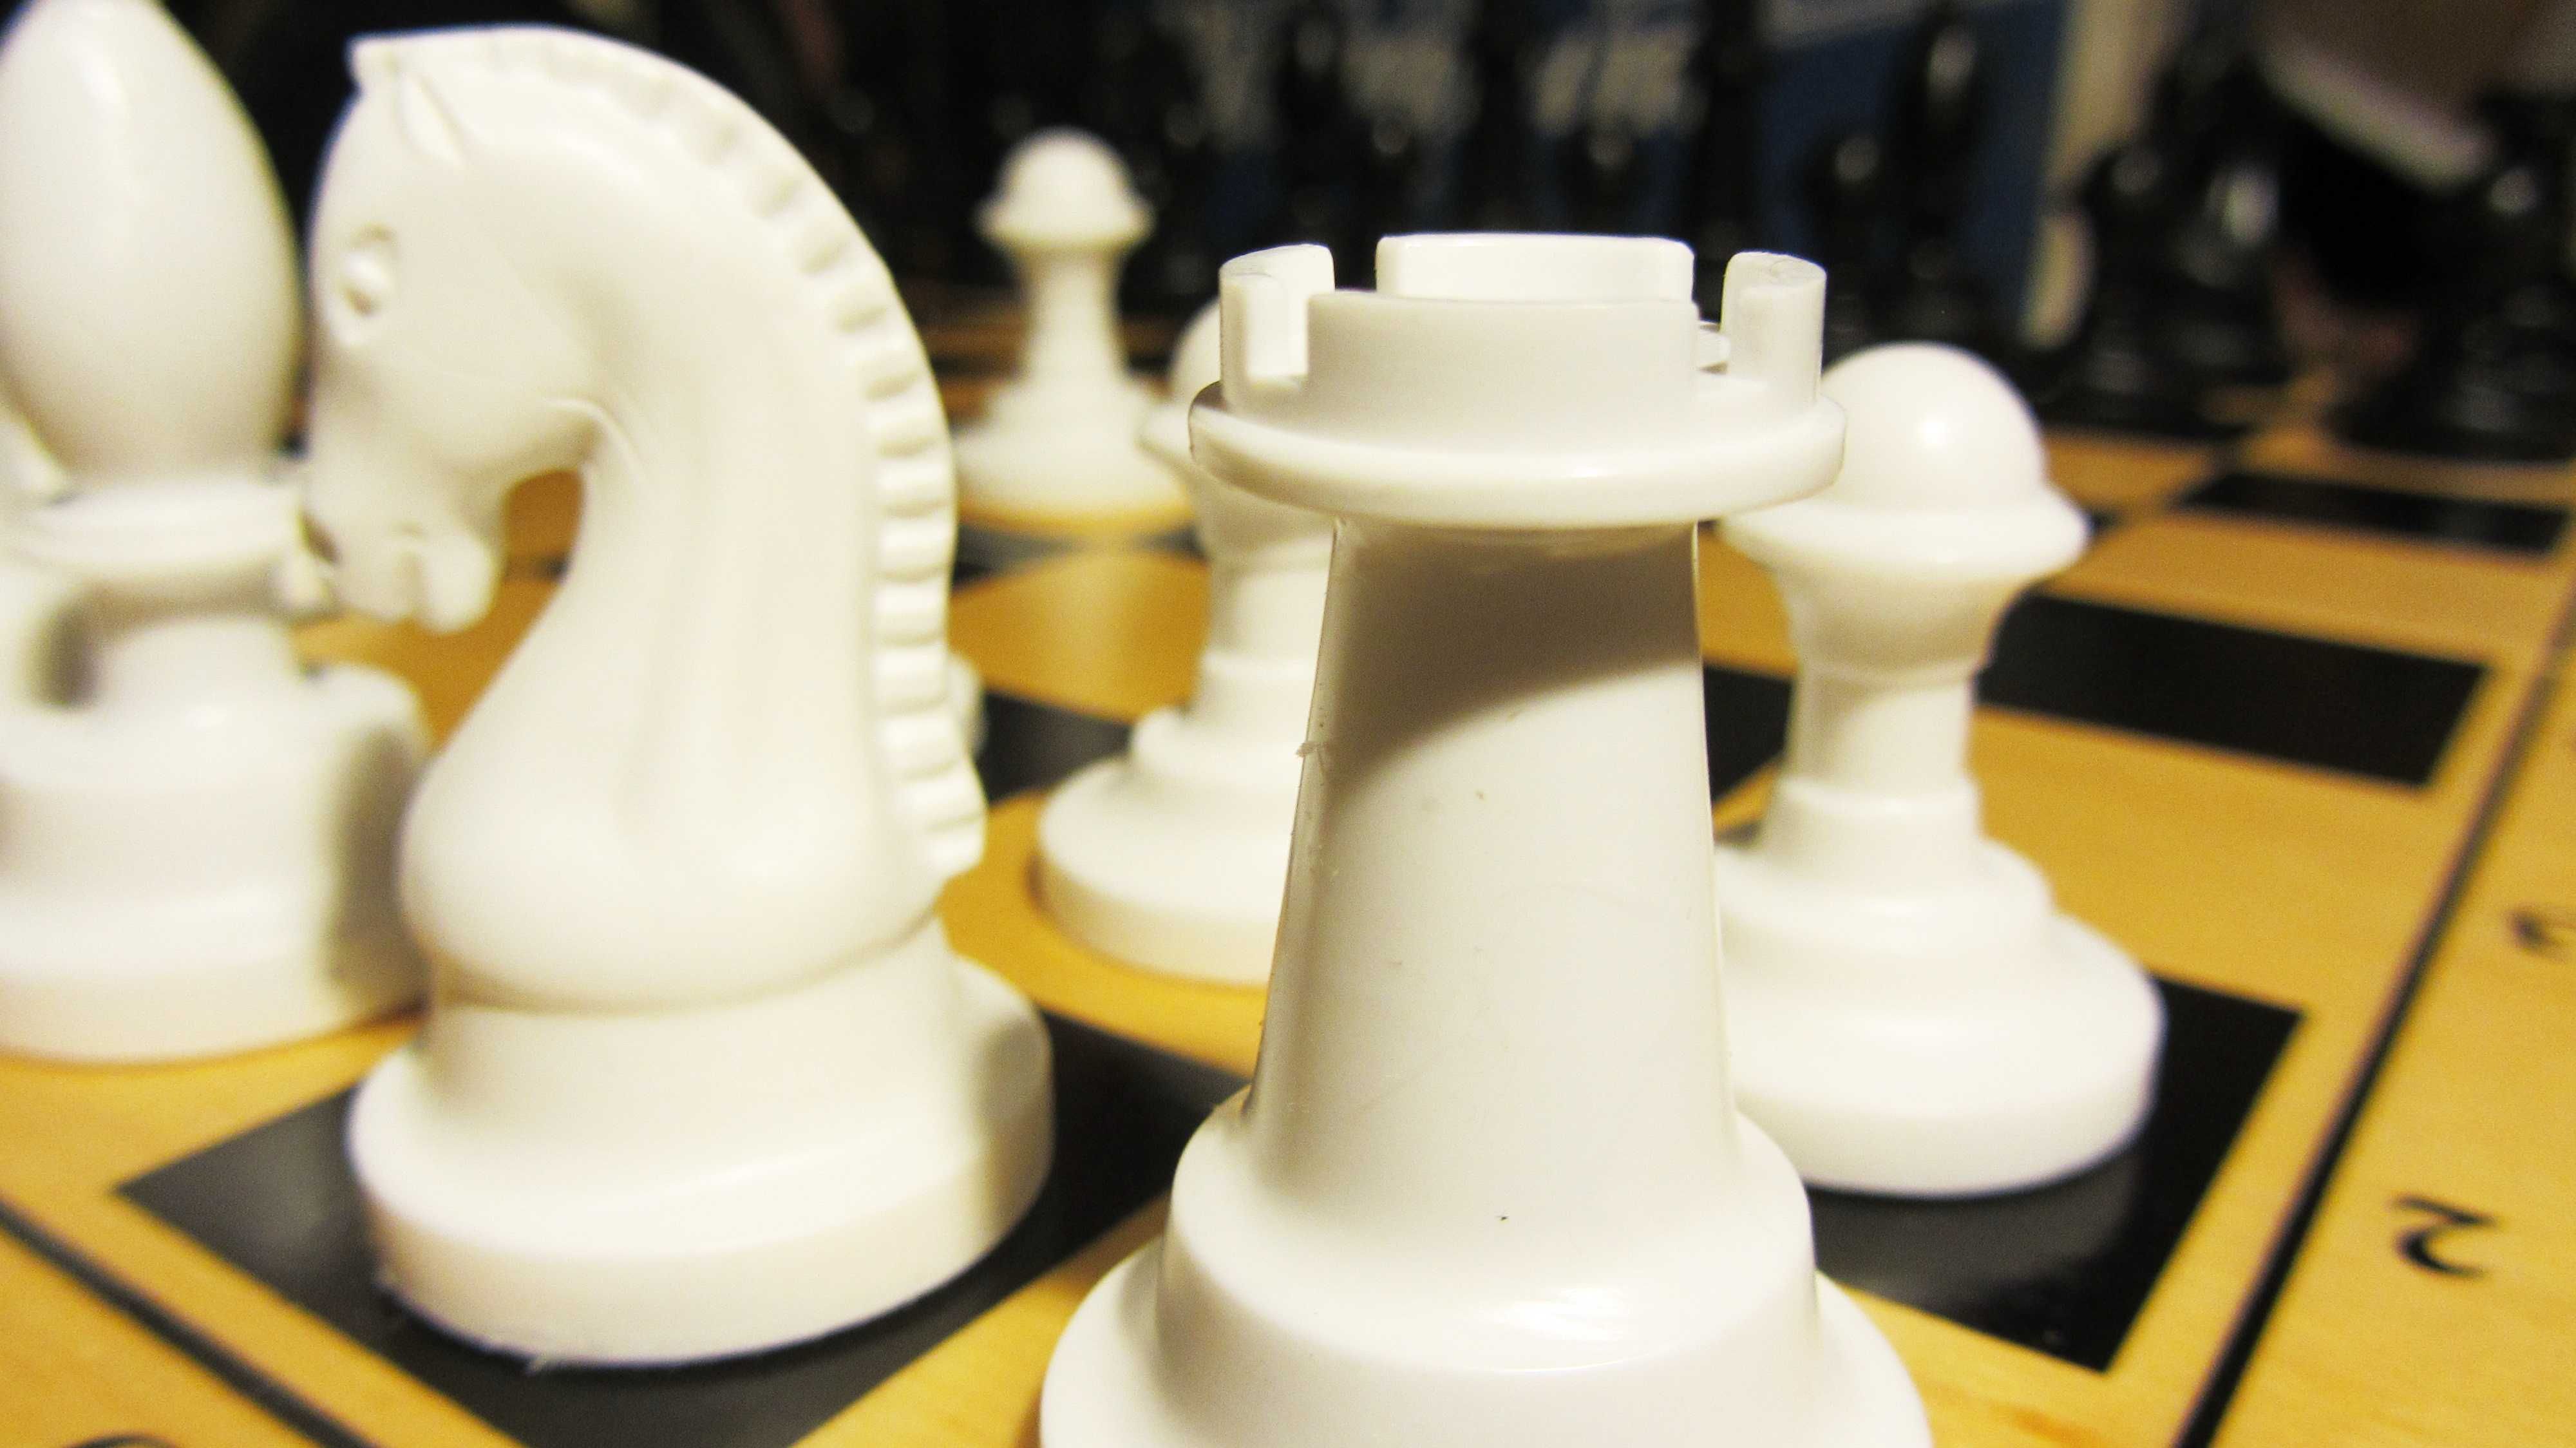 набор для игры в шахматы: доска и фигуры, хороший подарок ребенку